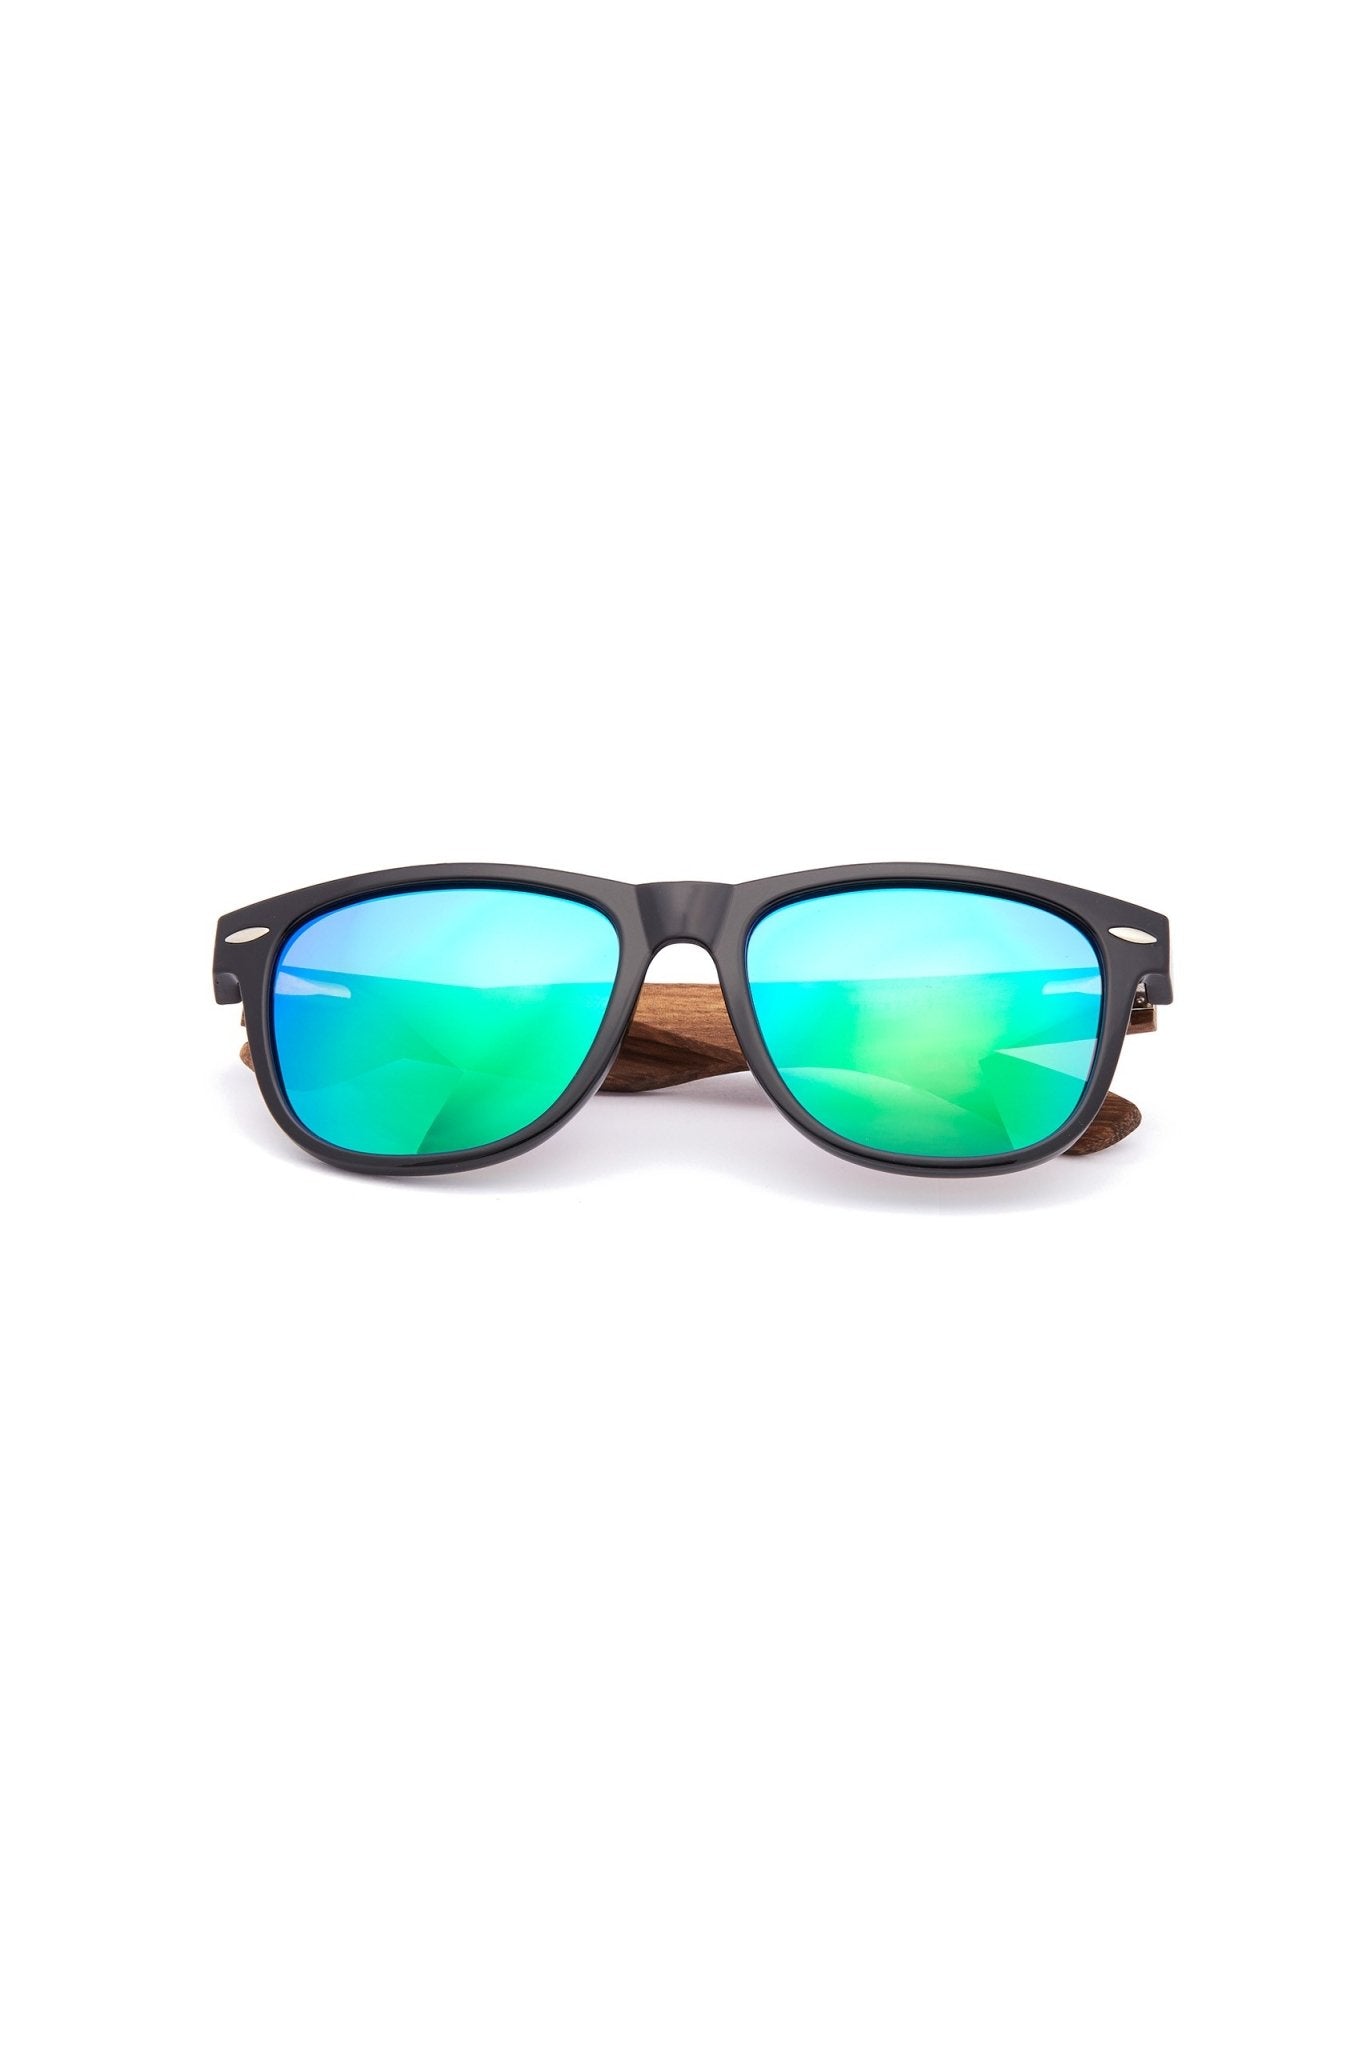 Buy Black Frame Blue Lens Square Sunglasses for Women | Hero | SOJOS